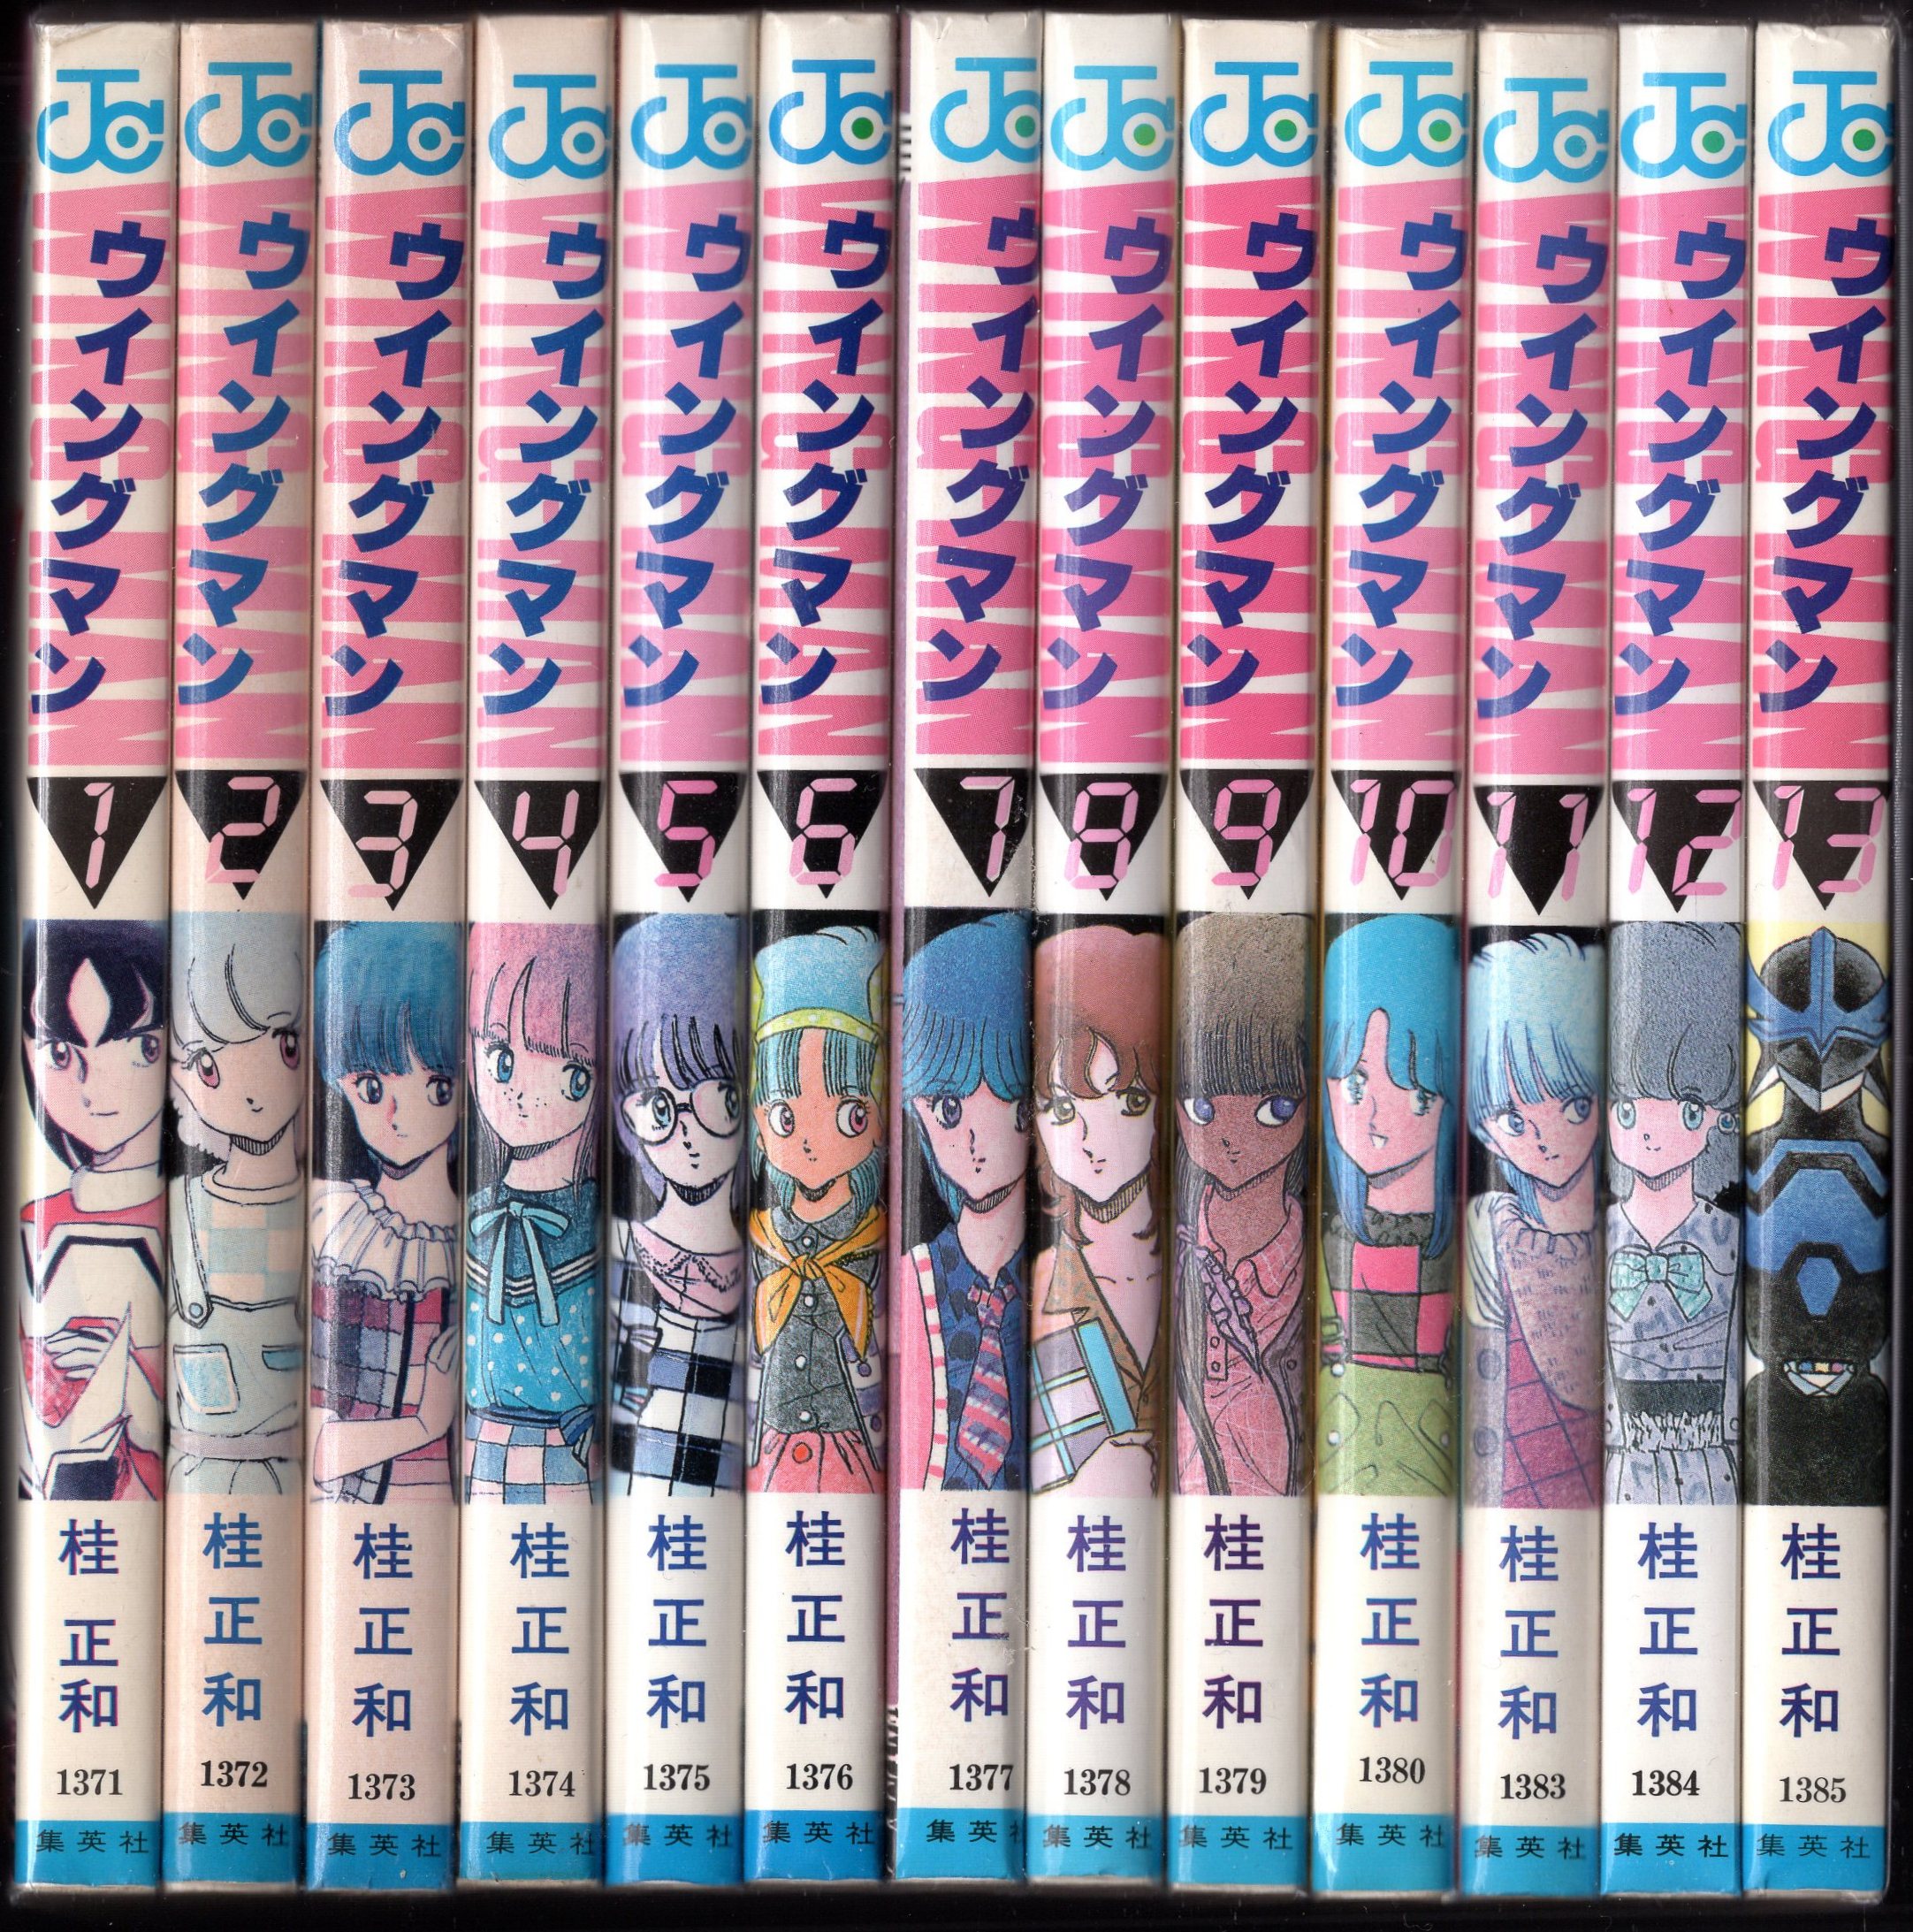 ウイングマン 全13巻完結 全巻セット - 全巻セット